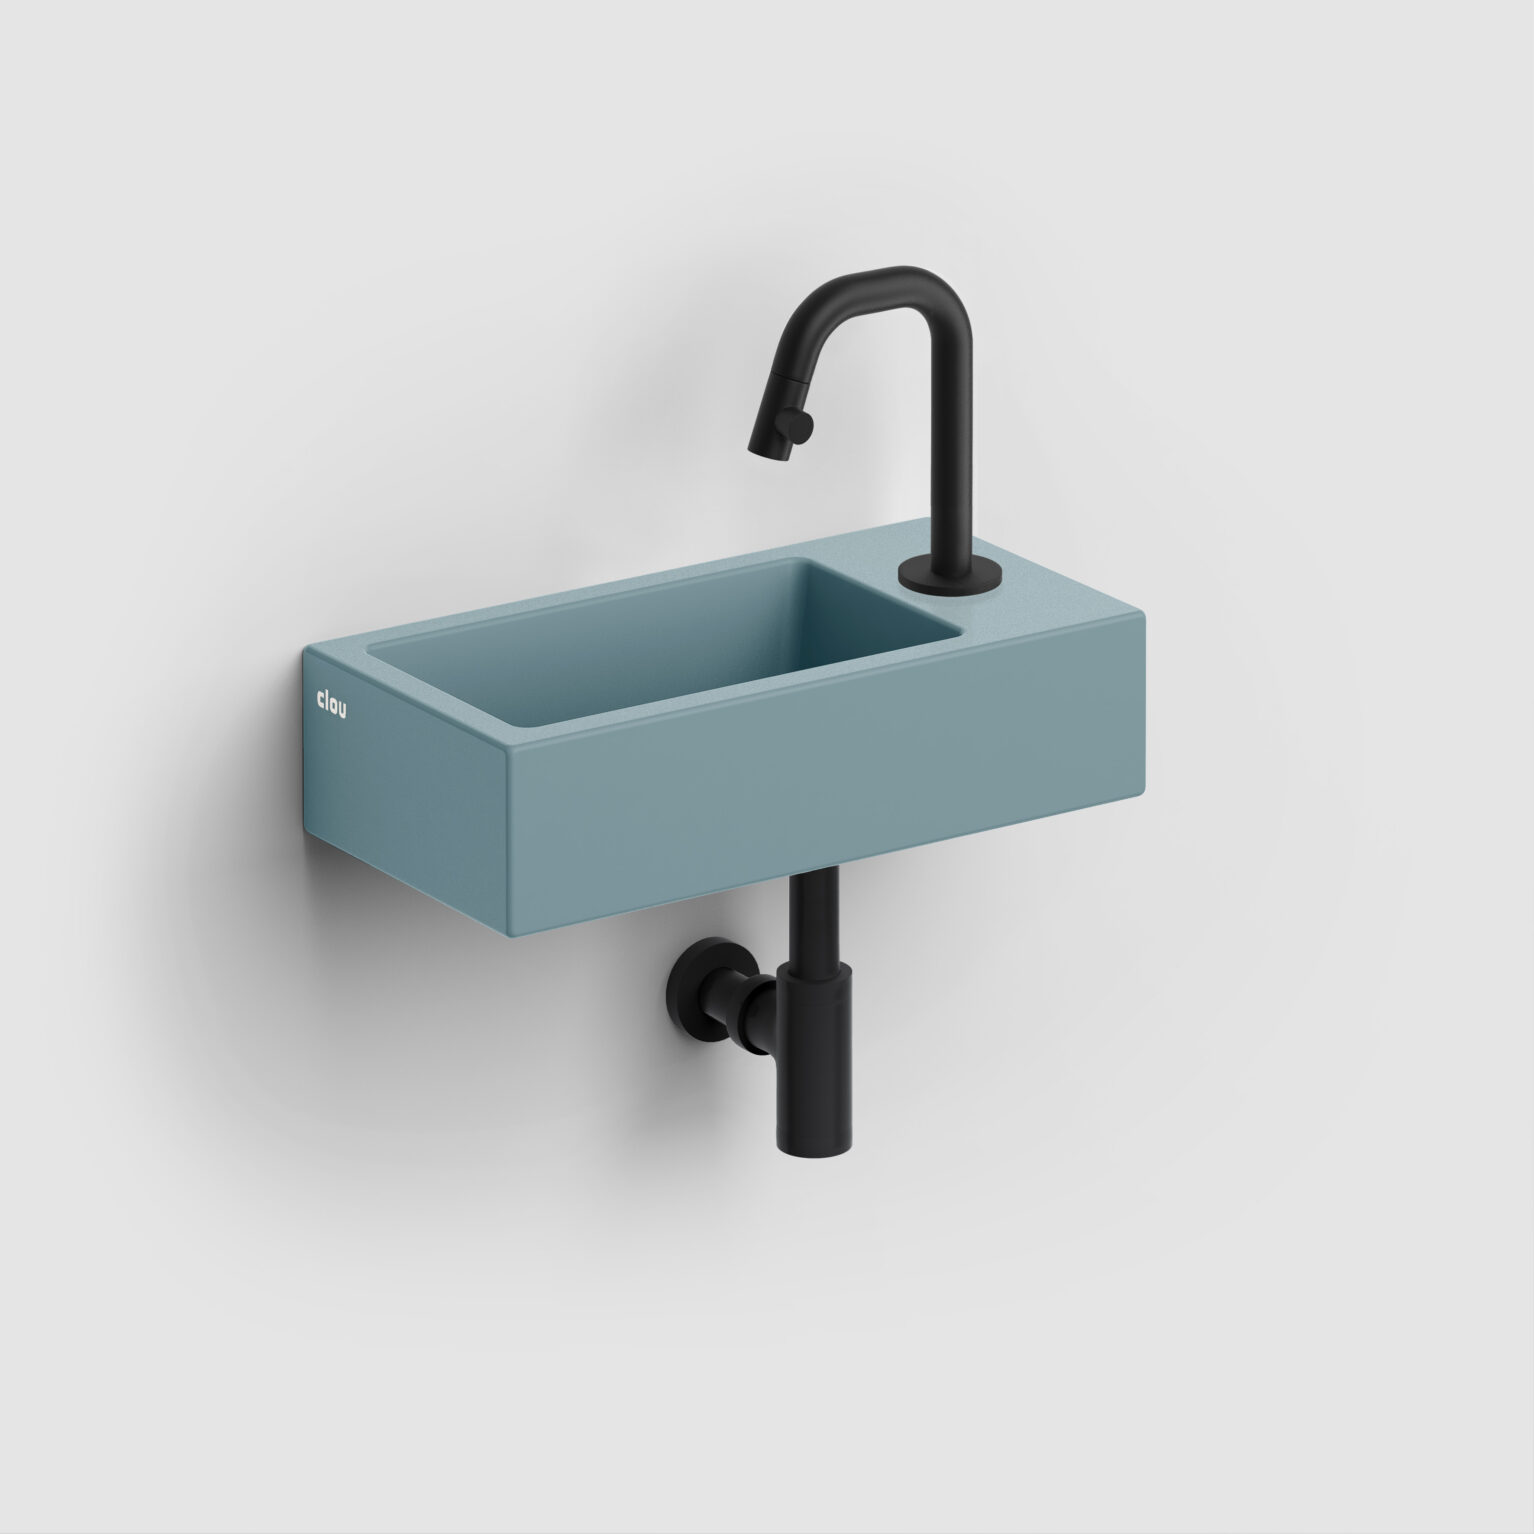 fontein-toilet-badkamer-luxe-sanitair-InBe-rechts-clou-36cm-Flush3-mat-blauw-CL0338030-Kaldur-koudwater-kraan-mat-zwart-CL060500421R-MiniSuk-sifon-CL065301121